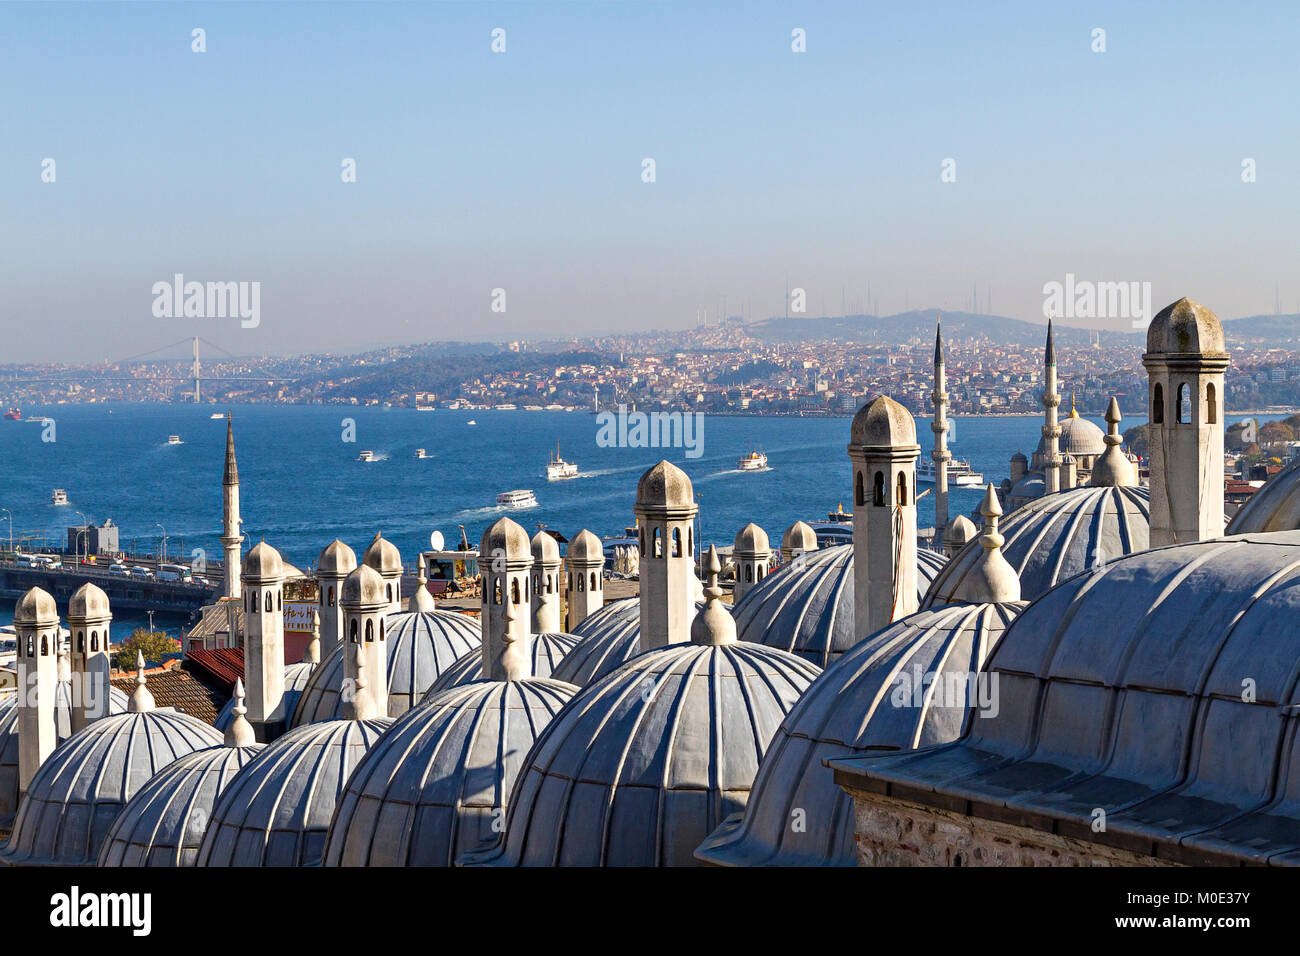 Bosforo attraverso i camini e le cupole dell'antica madrasa ottomana a Suleymaniye, Istanbul, Turchia. Foto Stock